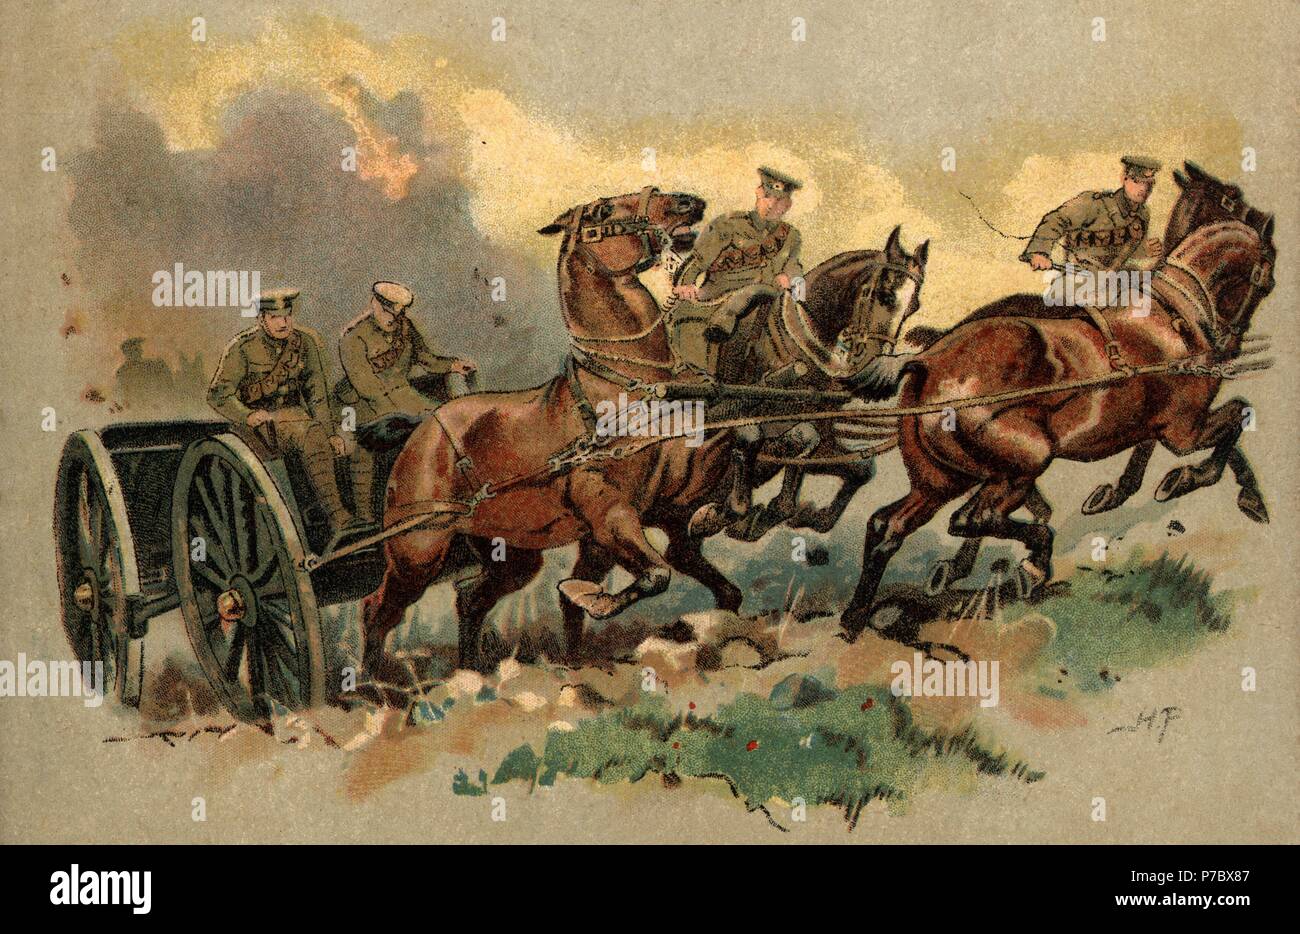 Europa. Primera guerra mundial (1914-1918). Inglaterra. Artillería real de campaña entrando en acción. Dibujo de 1919. Stock Photo